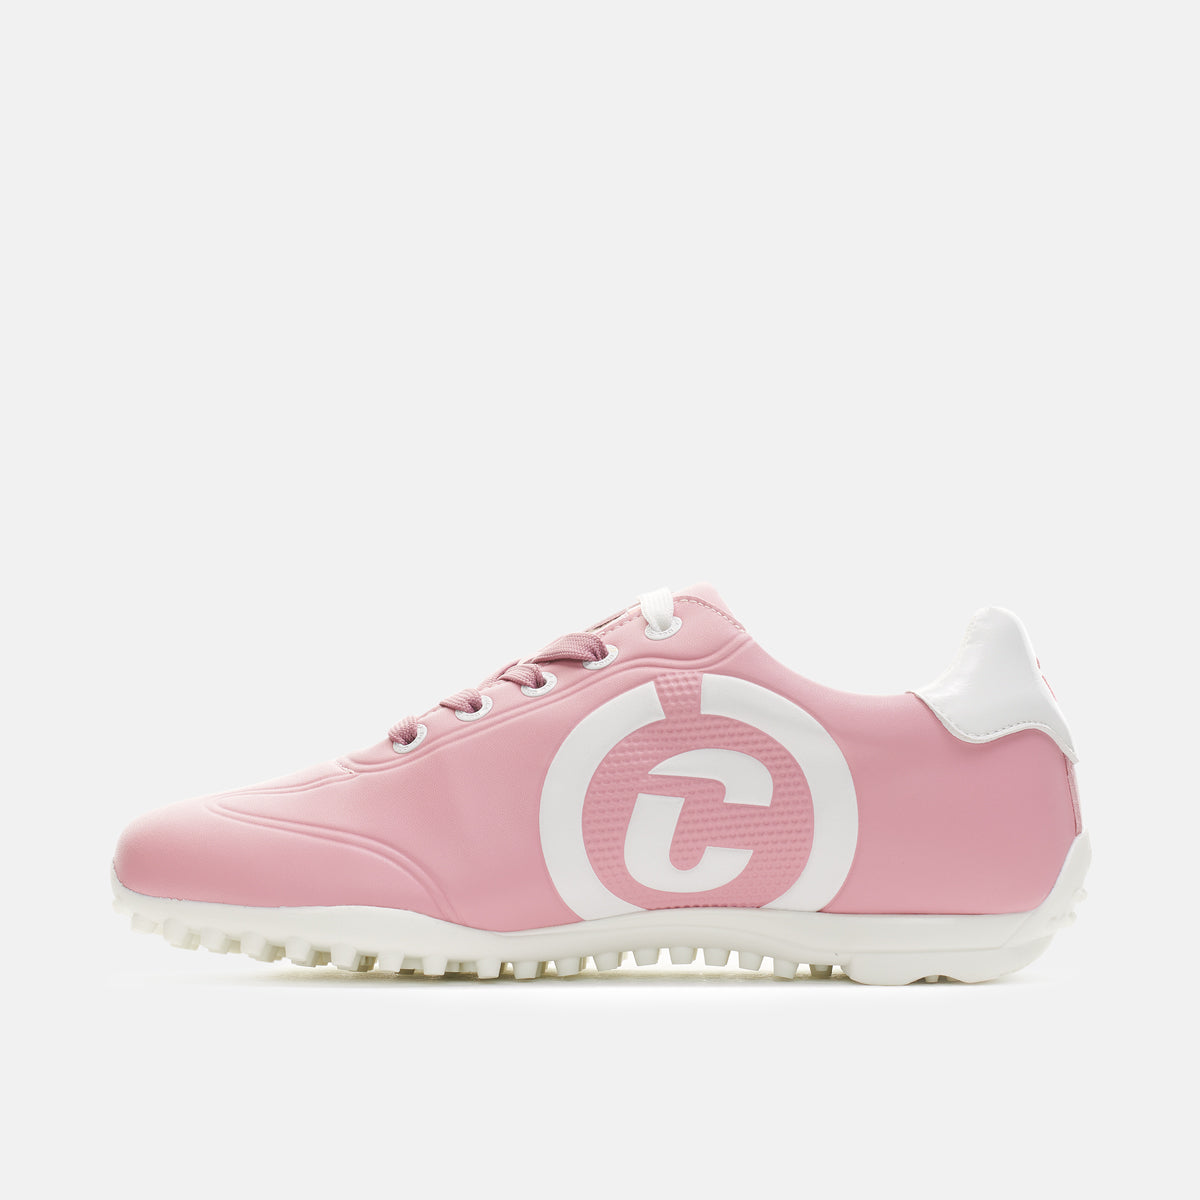 Queenscup Pink - Women's Golf Shoe